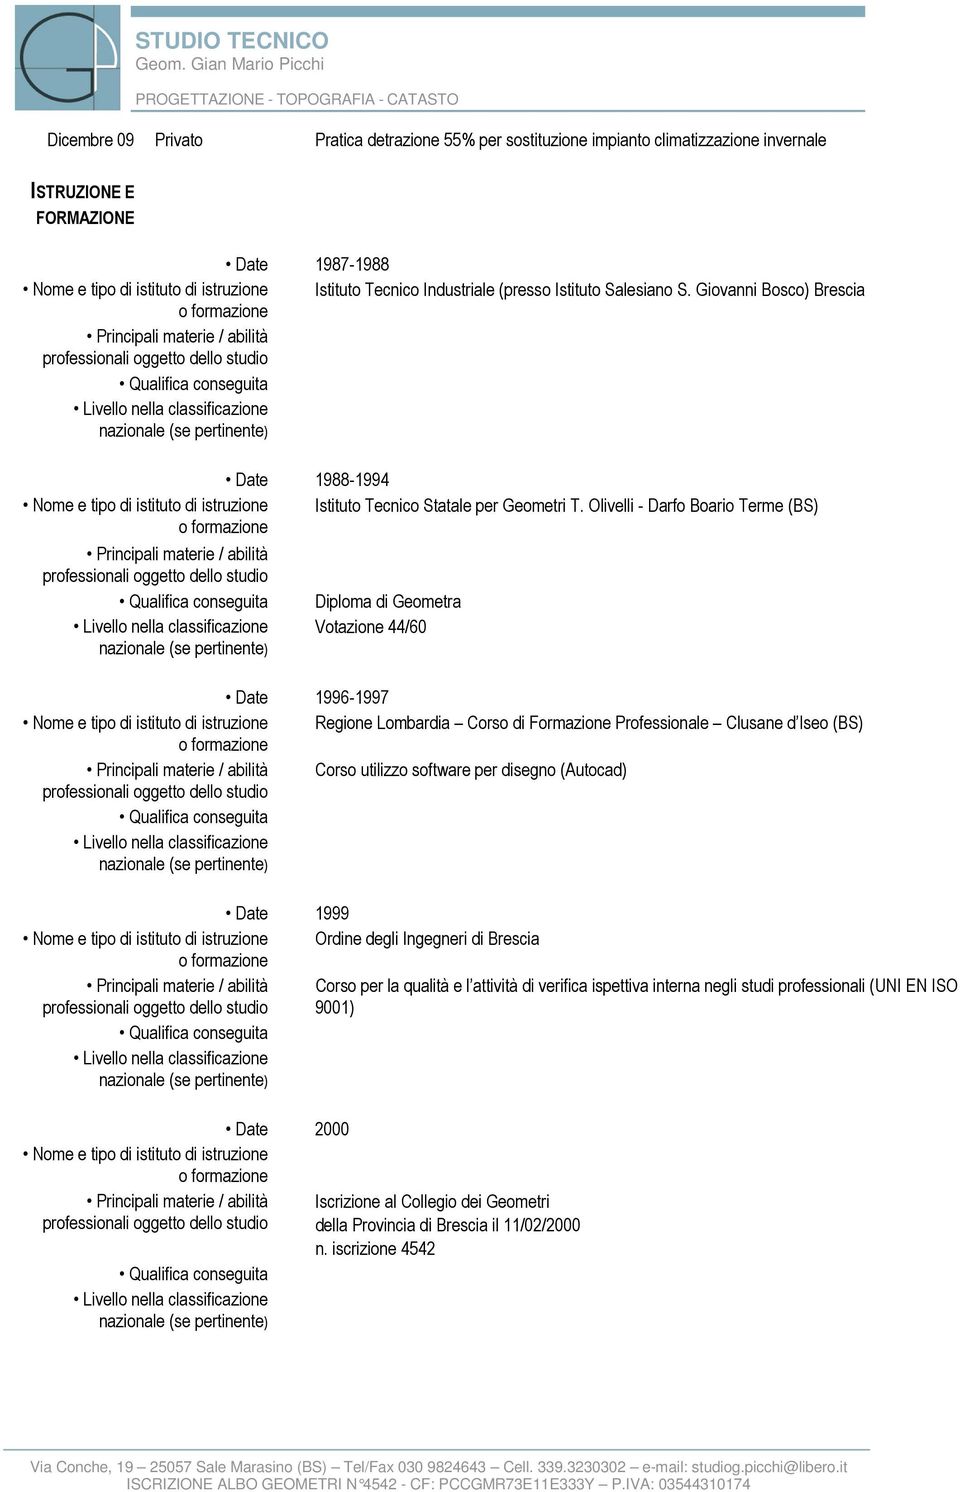 Olivelli - Darfo Boario Terme (BS) Principali materie / abilità Diploma di Geometra Votazione 44/60 Date 1996-1997 Nome e tipo di istituto di istruzione Regione Lombardia Corso di Formazione